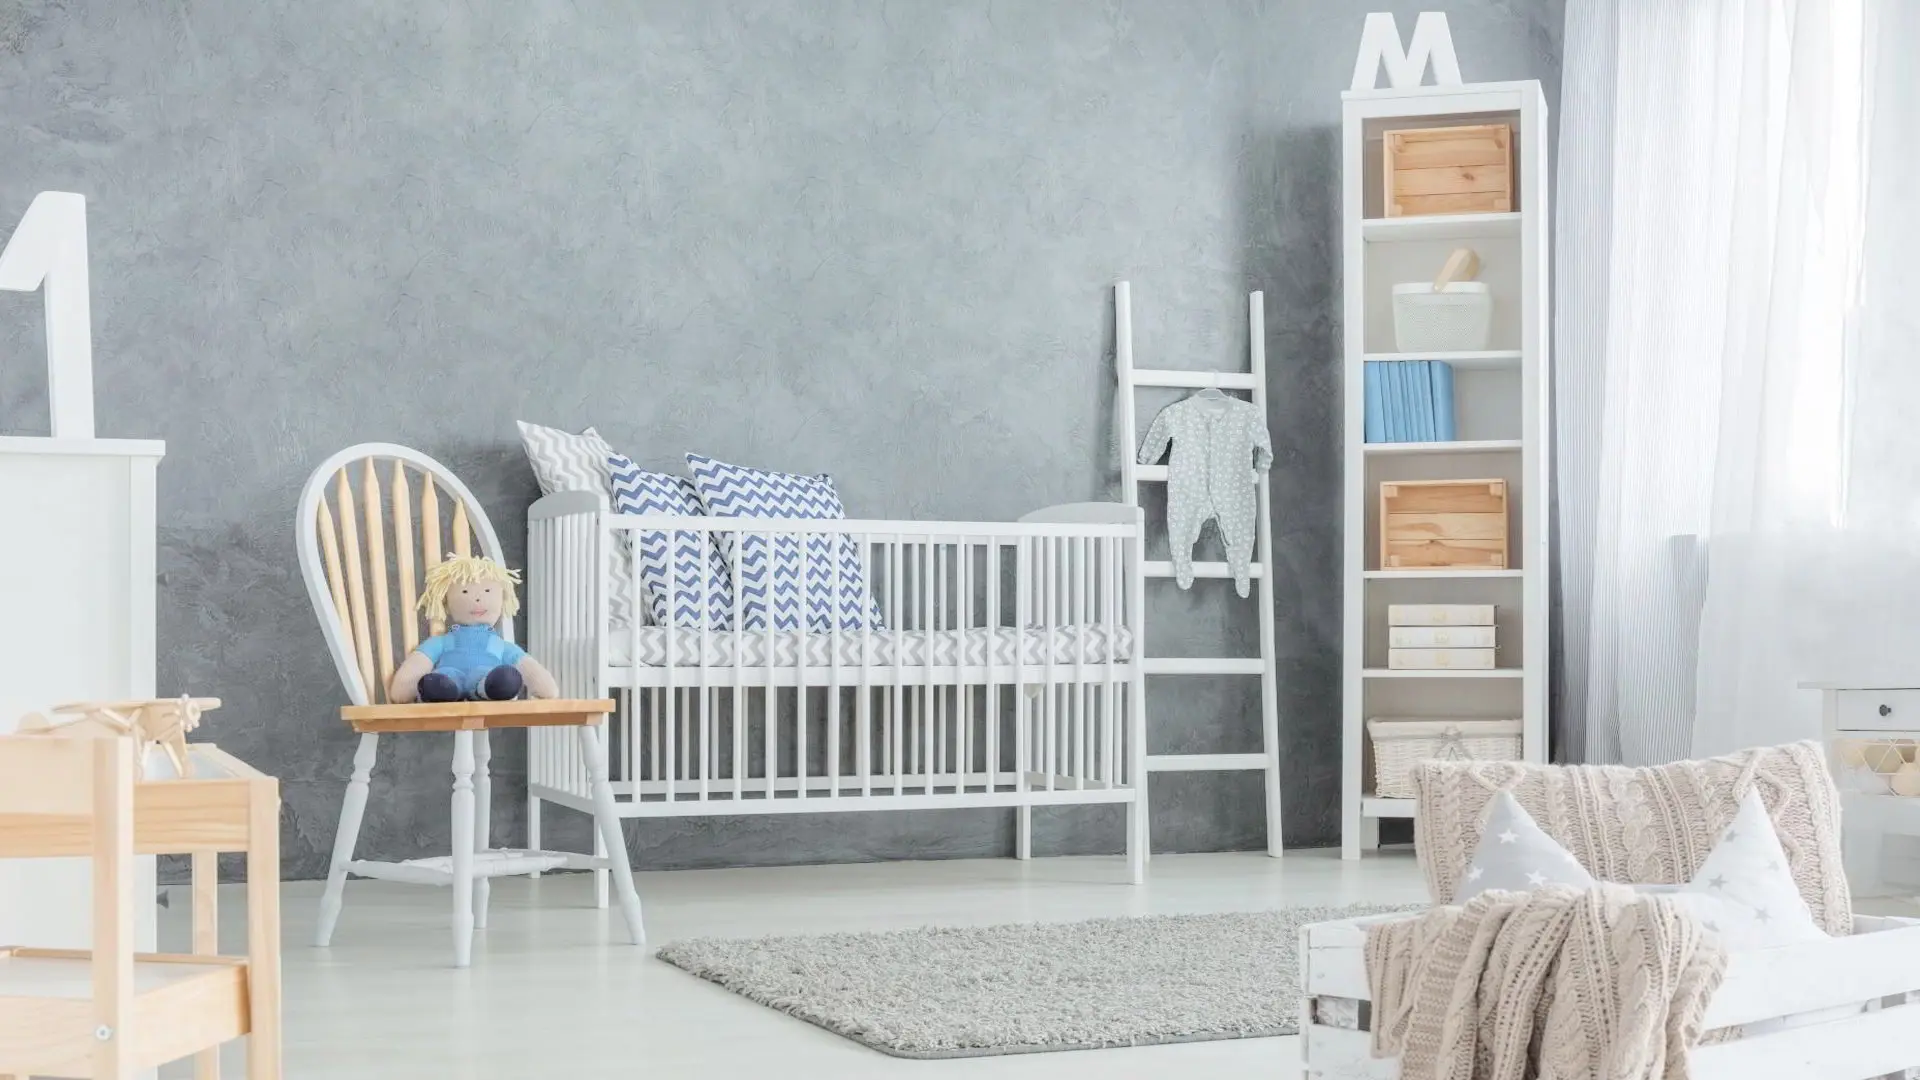 Dhomë luksoze për fëmijë me mikrocement në ngjyrë gri